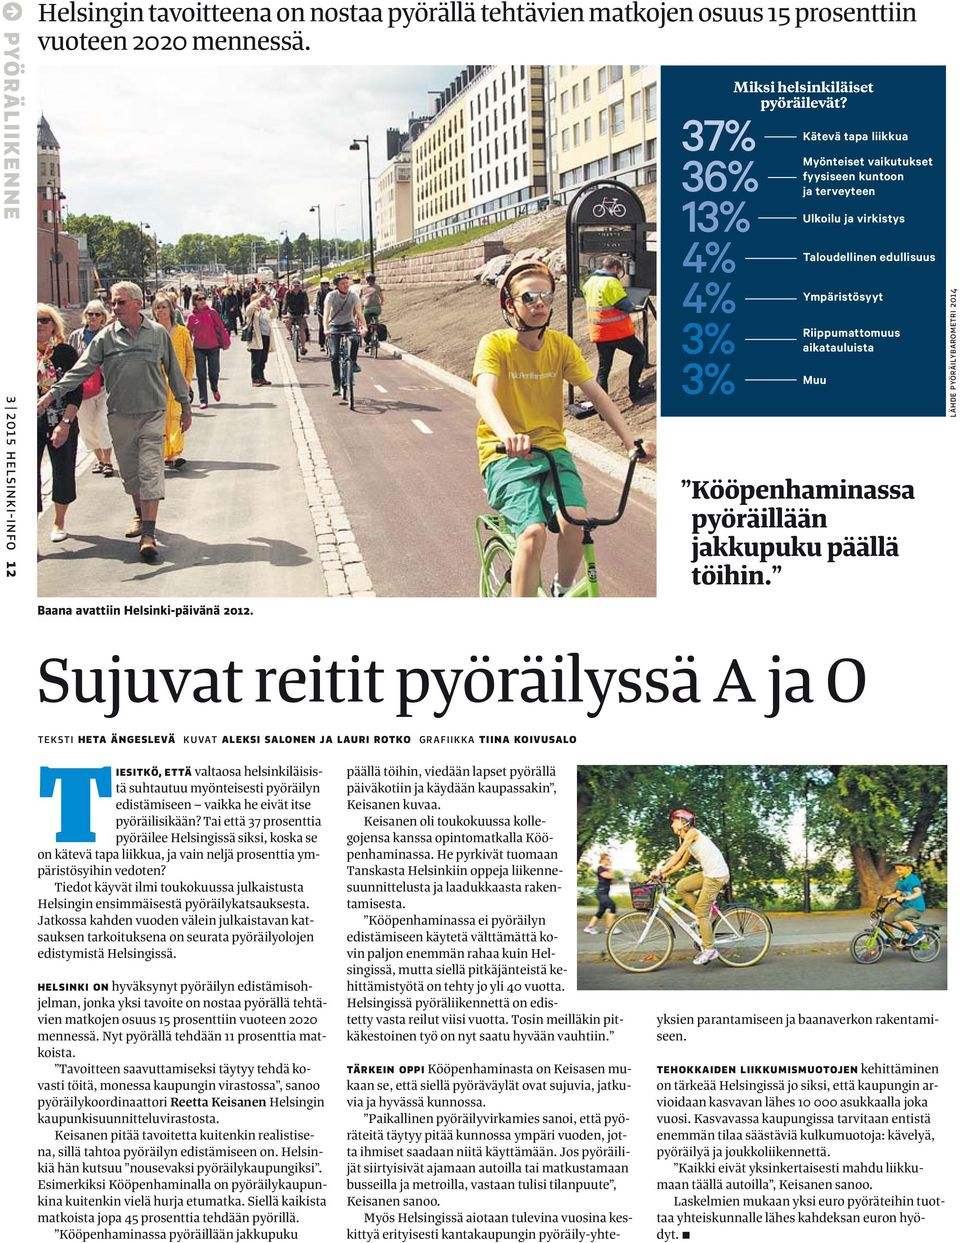 Riippumattomuus aikatauluista Muu Riippumattomuus aikatauluista Muu Kööpenhaminassa pyöräillään jakkupuku päällä töihin. LÄHDE PYÖRÄILYBAROMETRI 2014 Baana avattiin Helsinki-päivänä 2012.